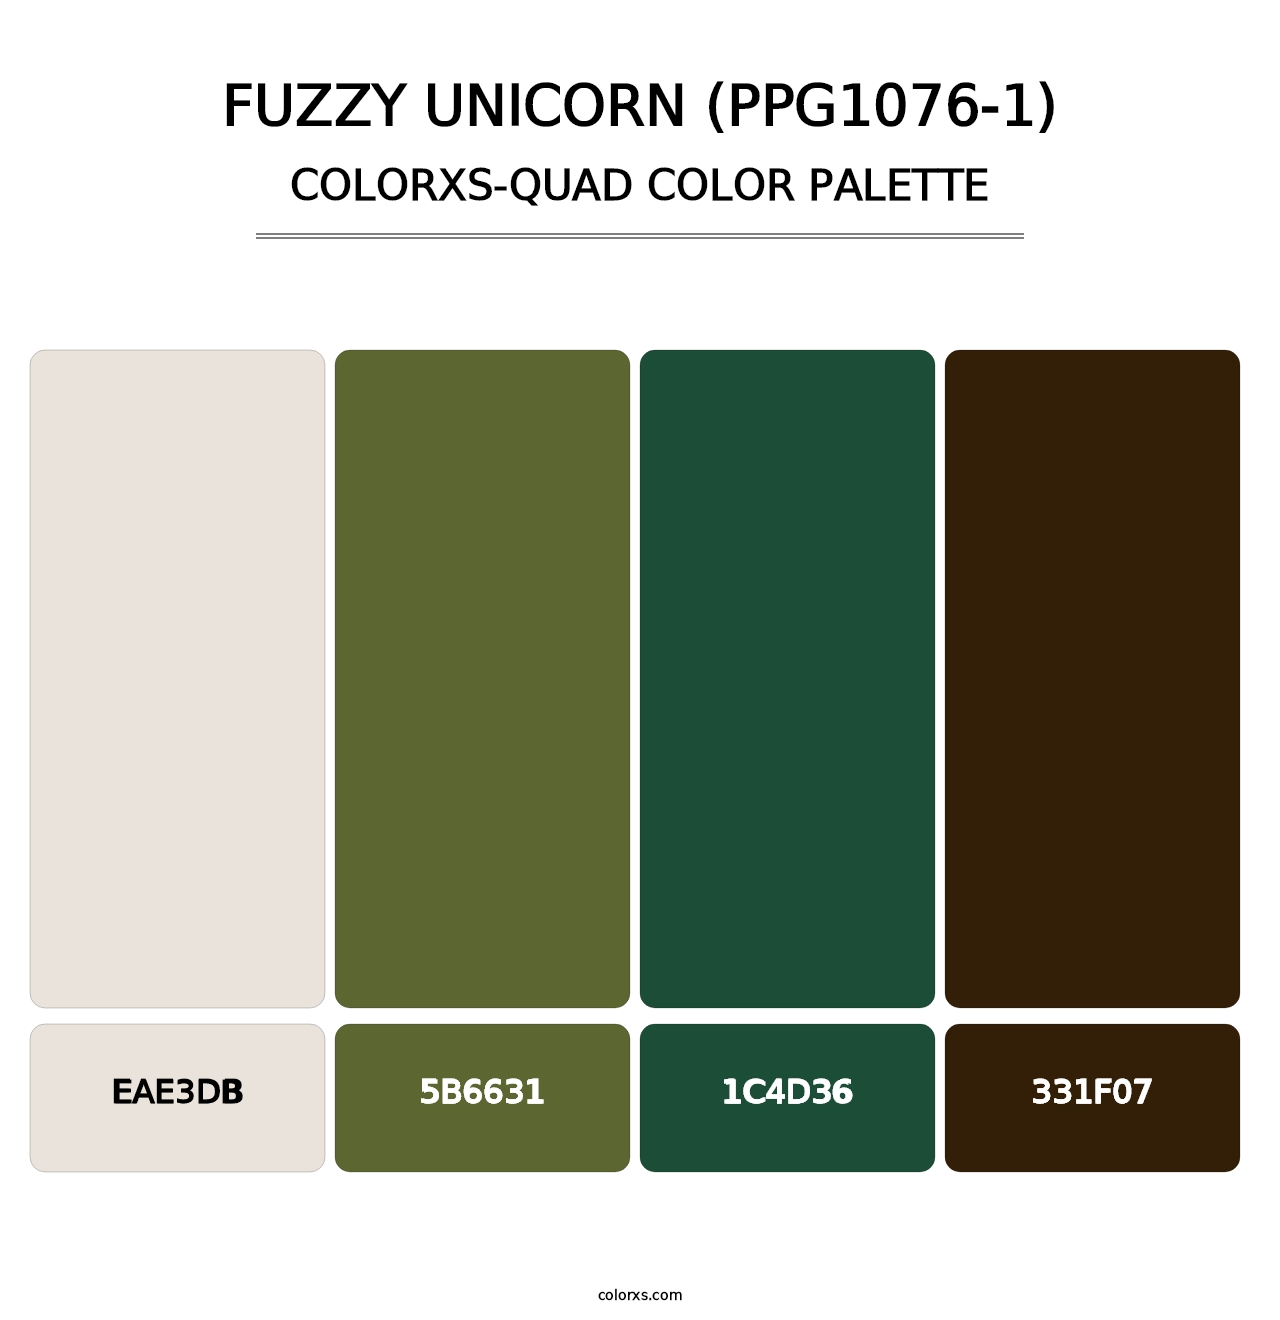 Fuzzy Unicorn (PPG1076-1) - Colorxs Quad Palette